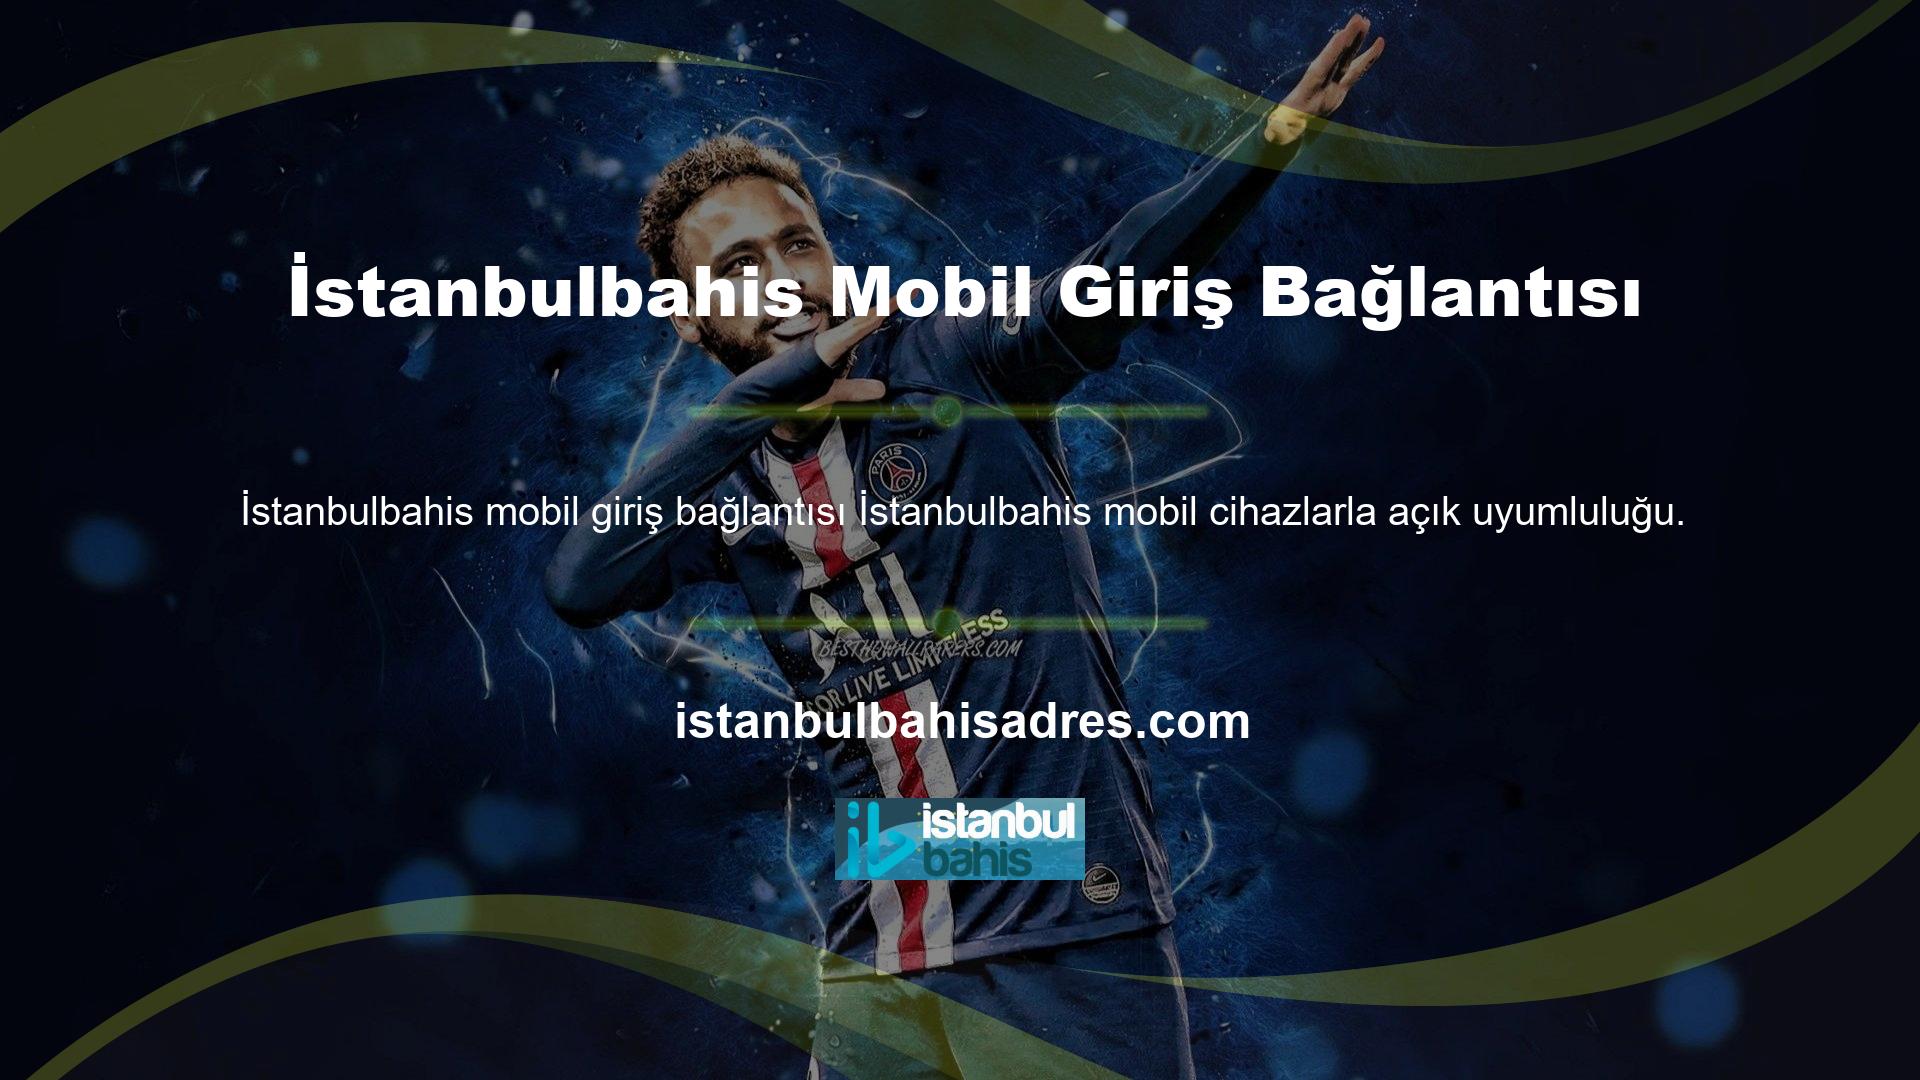 Sitenin sosyal medya hesaplarında kullanılan İstanbulbahis giriş URL'leri, Andoroid ve IOS mobil cihazlarla uyumludur